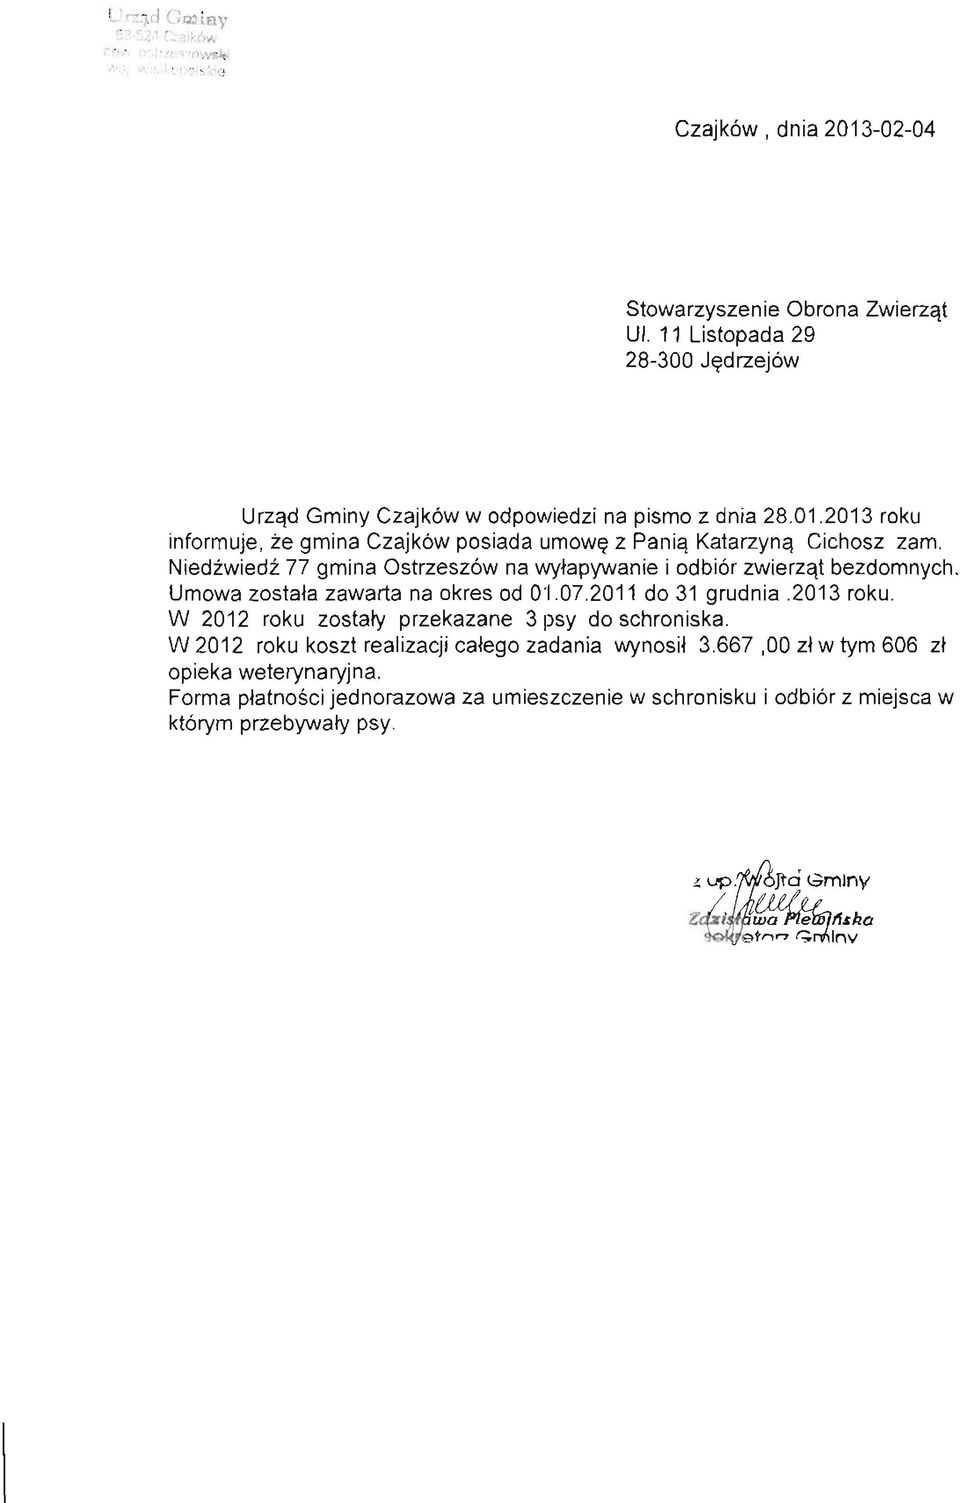 Niedźwiedź 77 gmina Ostrzeszów na wyłapywanie i odbiór zwierząt bezdomnych. Umowa została zawarta na okres od 01.07.2011 do 31 grudnia.2013 roku.